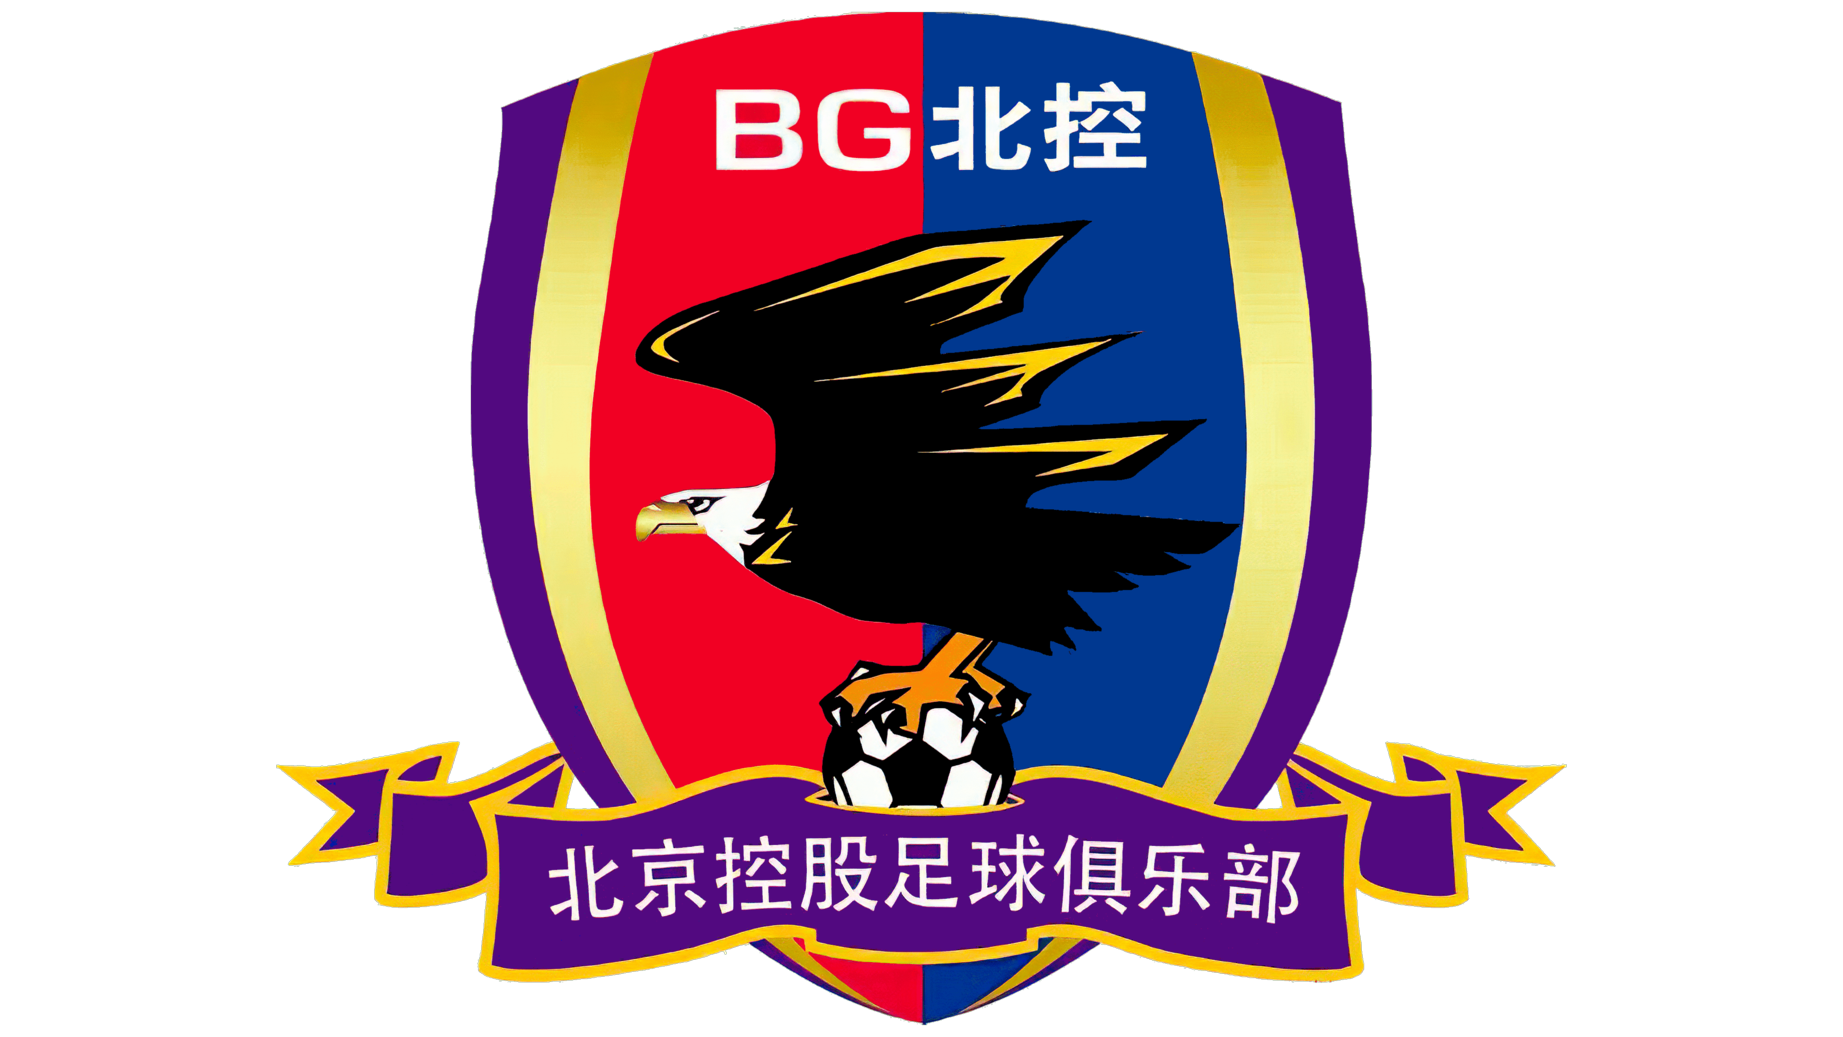 Beijing enterprises logo